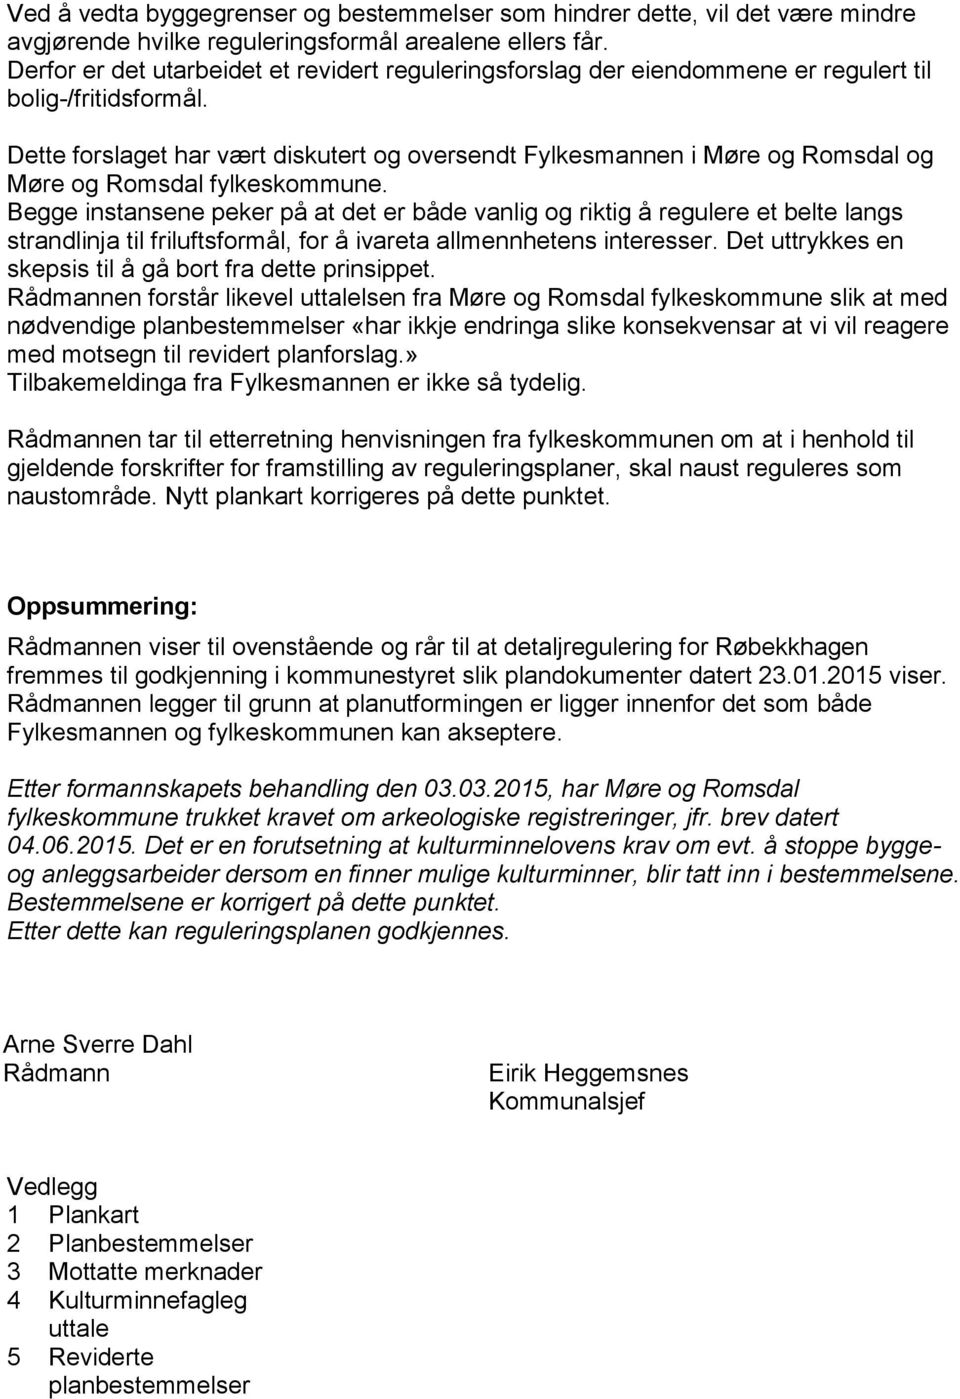 Dette forslaget har vært diskutert og oversendt Fylkesmannen i Møre og Romsdal og Møre og Romsdal fylkeskommune.